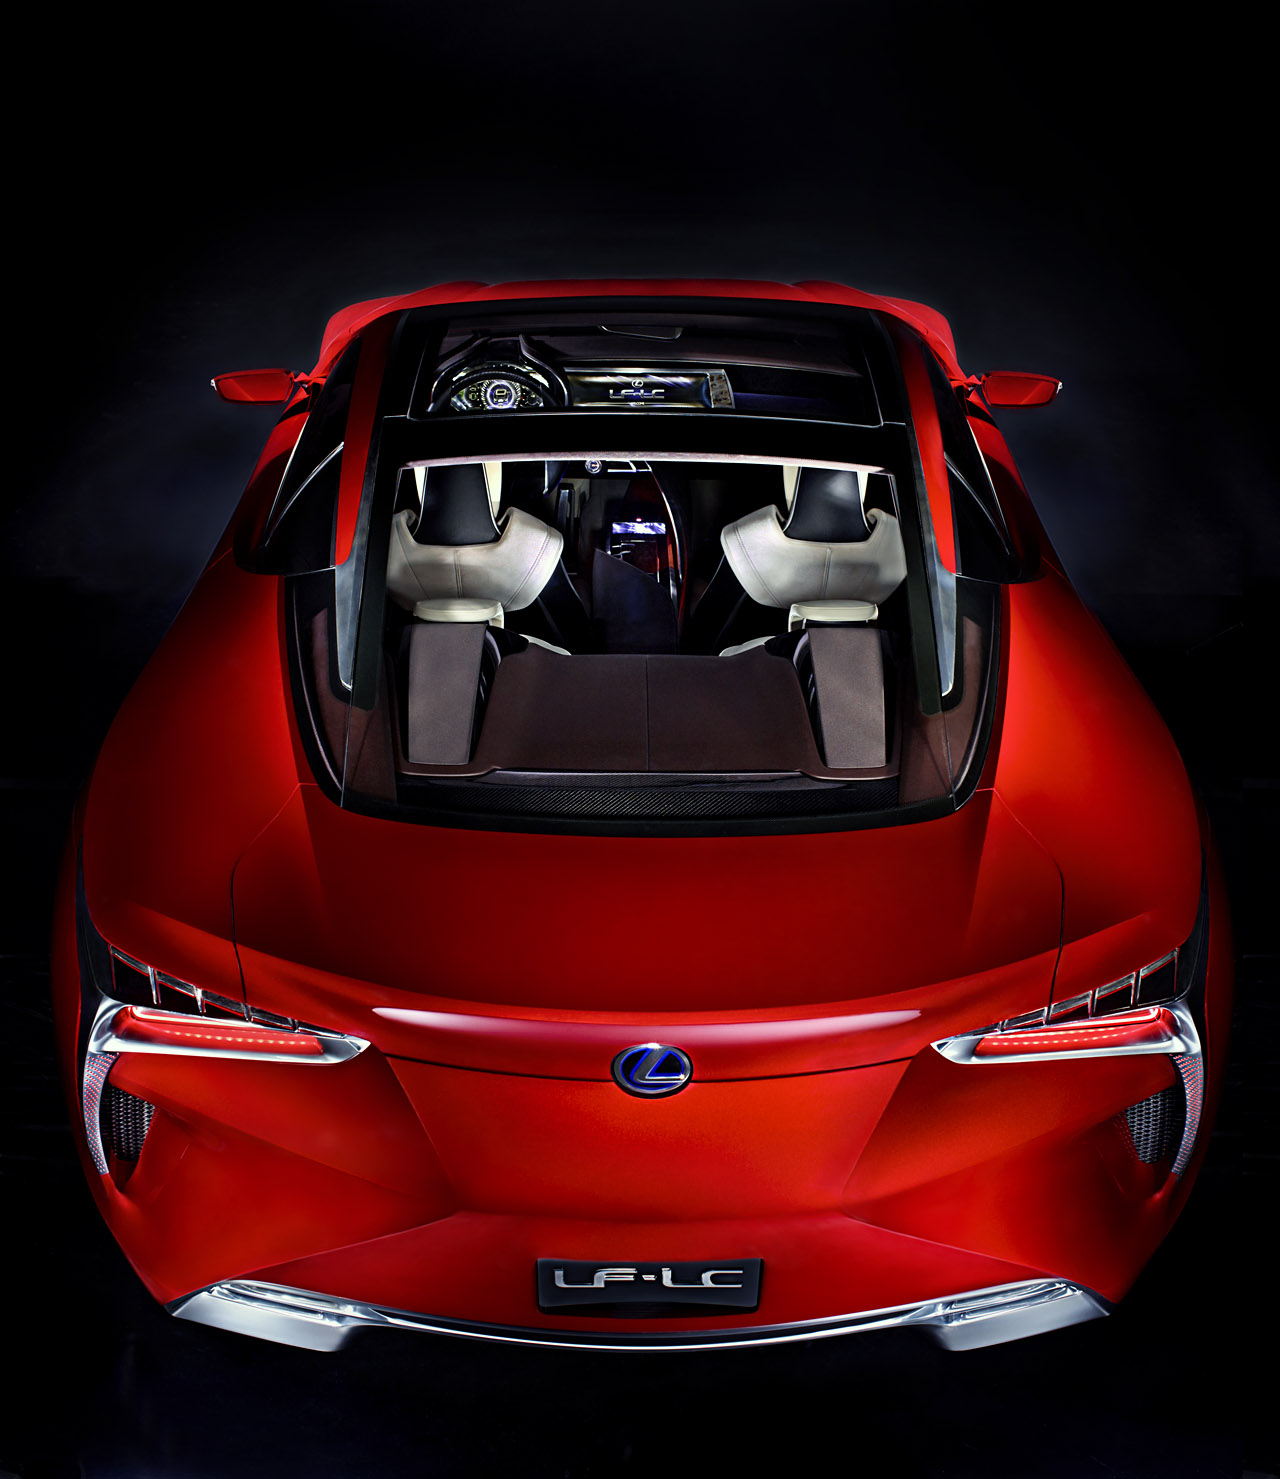 Lexus LF-LC hybrid sports coupe concept at Detroit ...